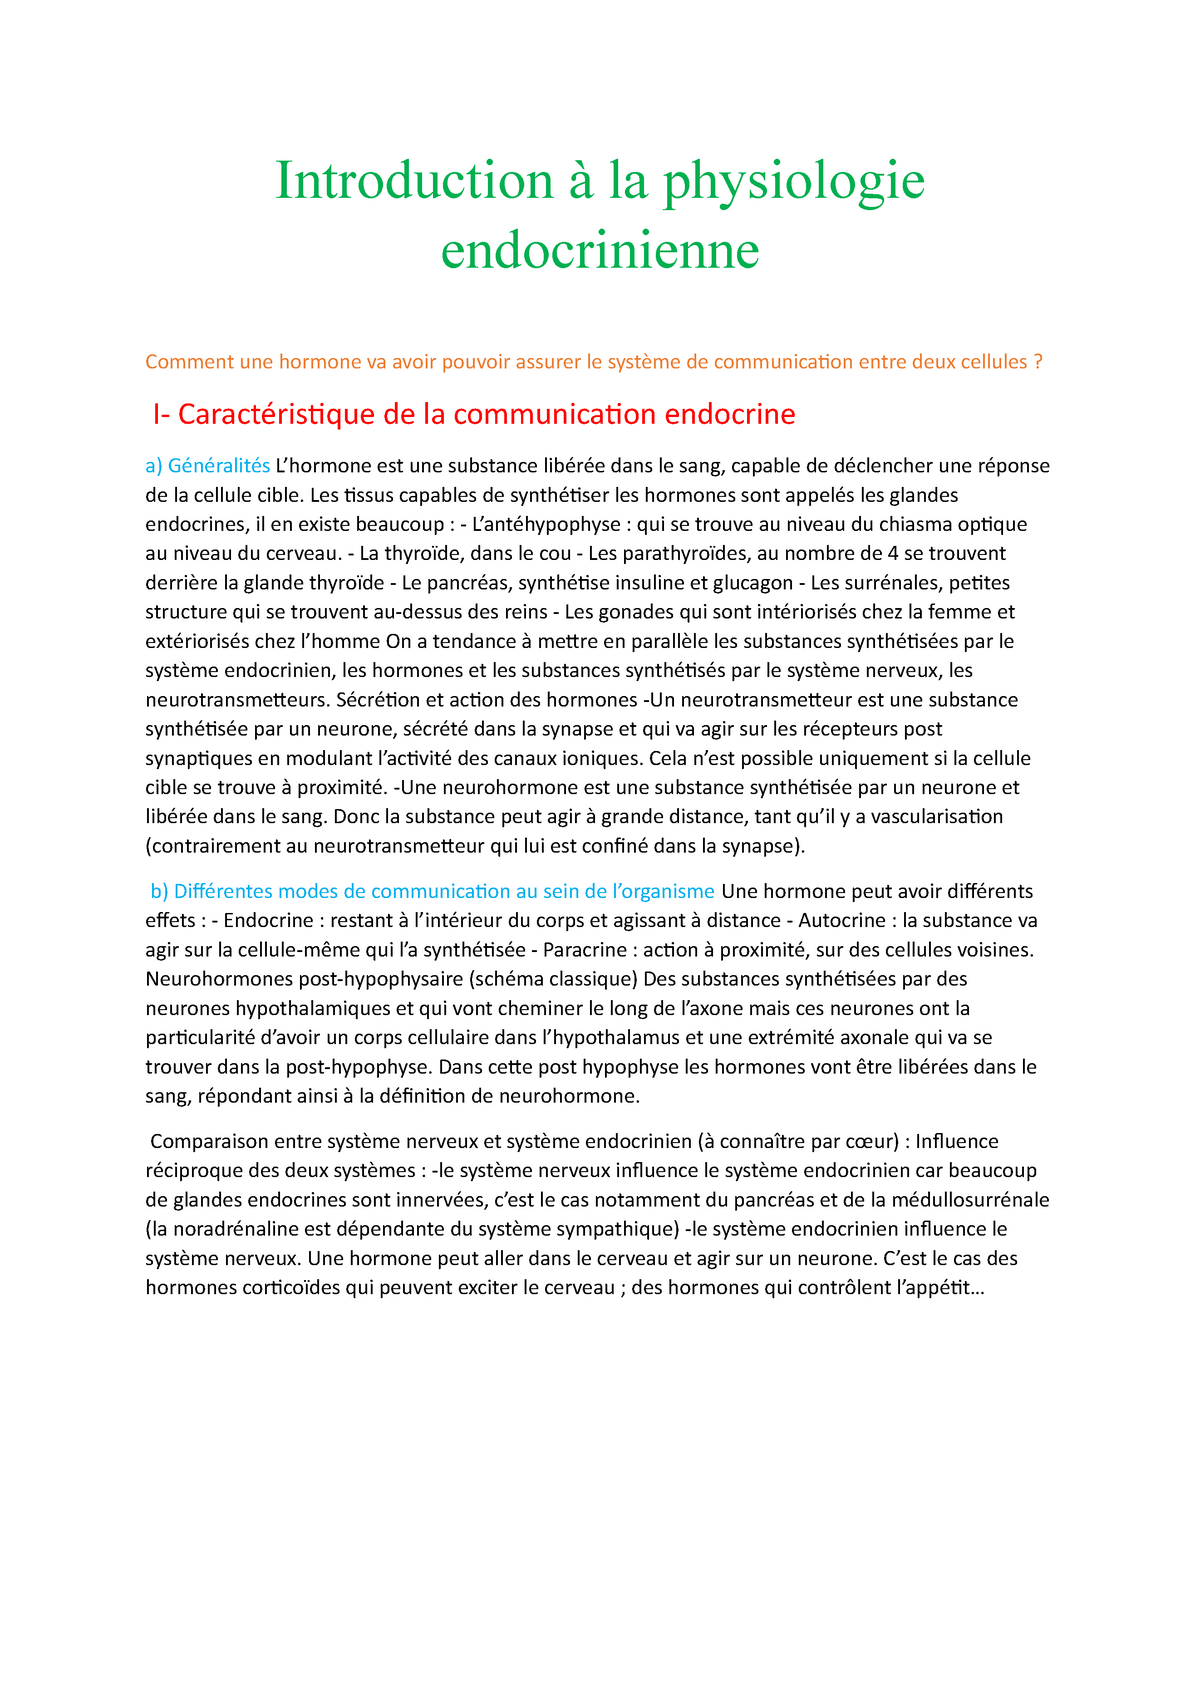 Introduction à la physiologie endocrinienne - StuDocu